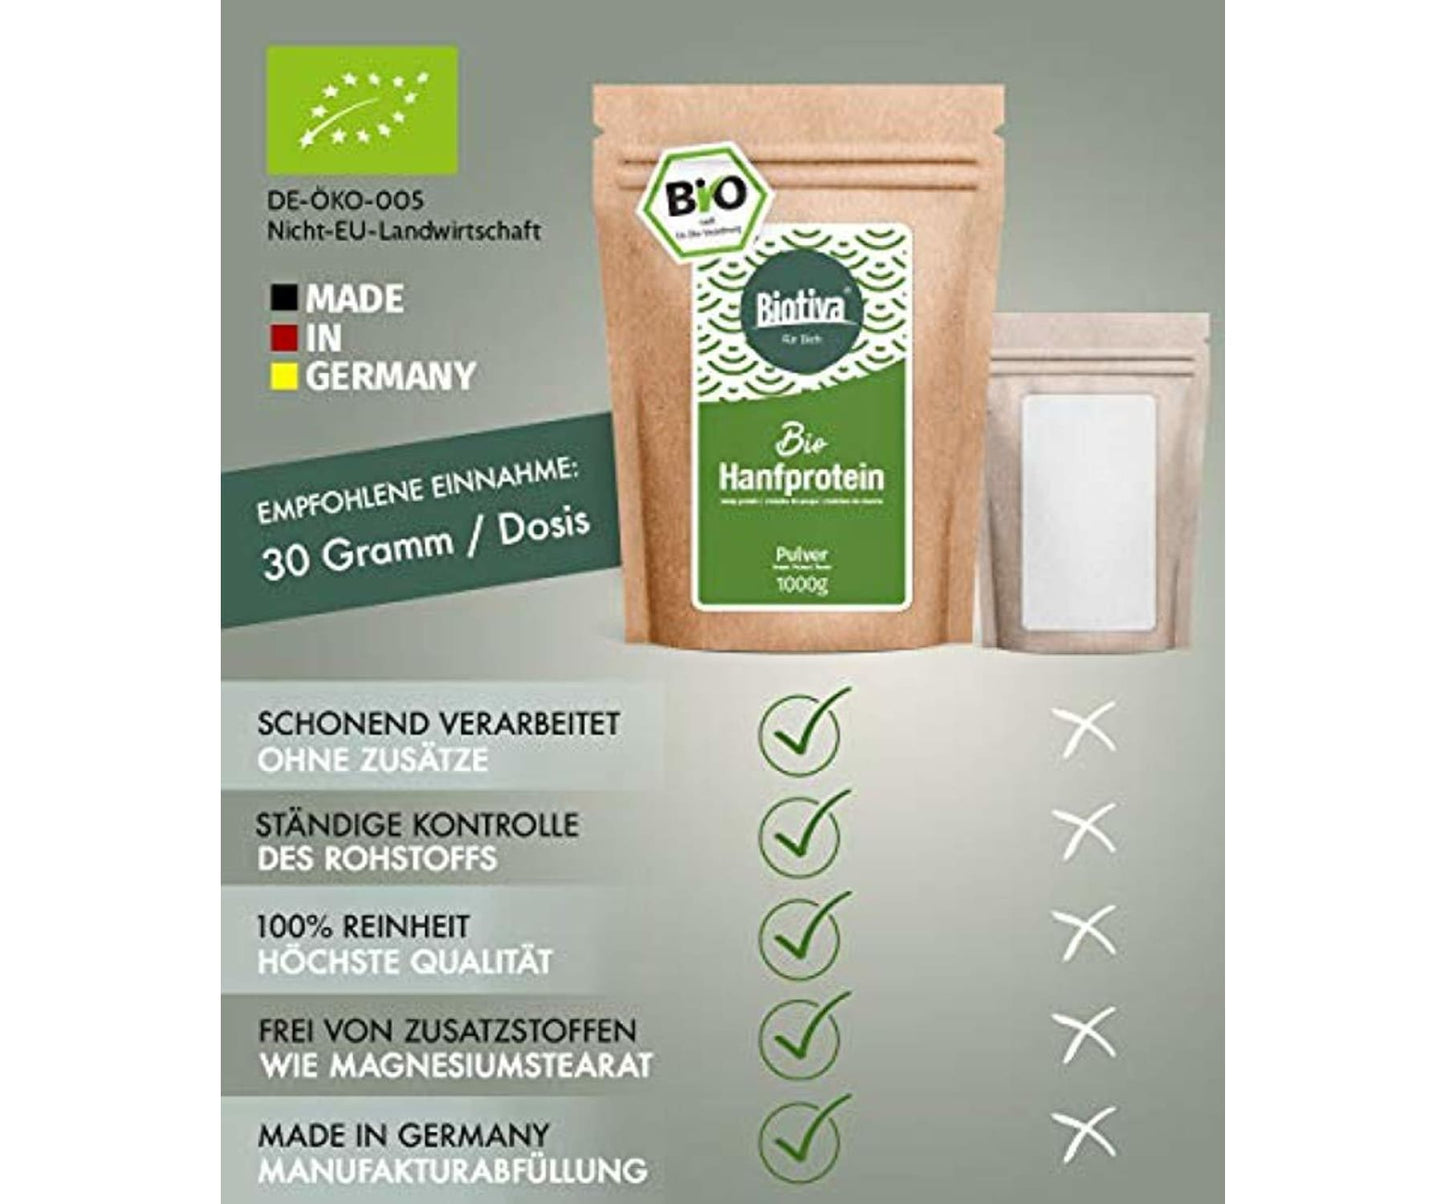 Hanf und Hemp - BIO Hanfprotein Pulver - 1kg 50% Proteingehalt - Fitness - Supplement - Muskelaufbau